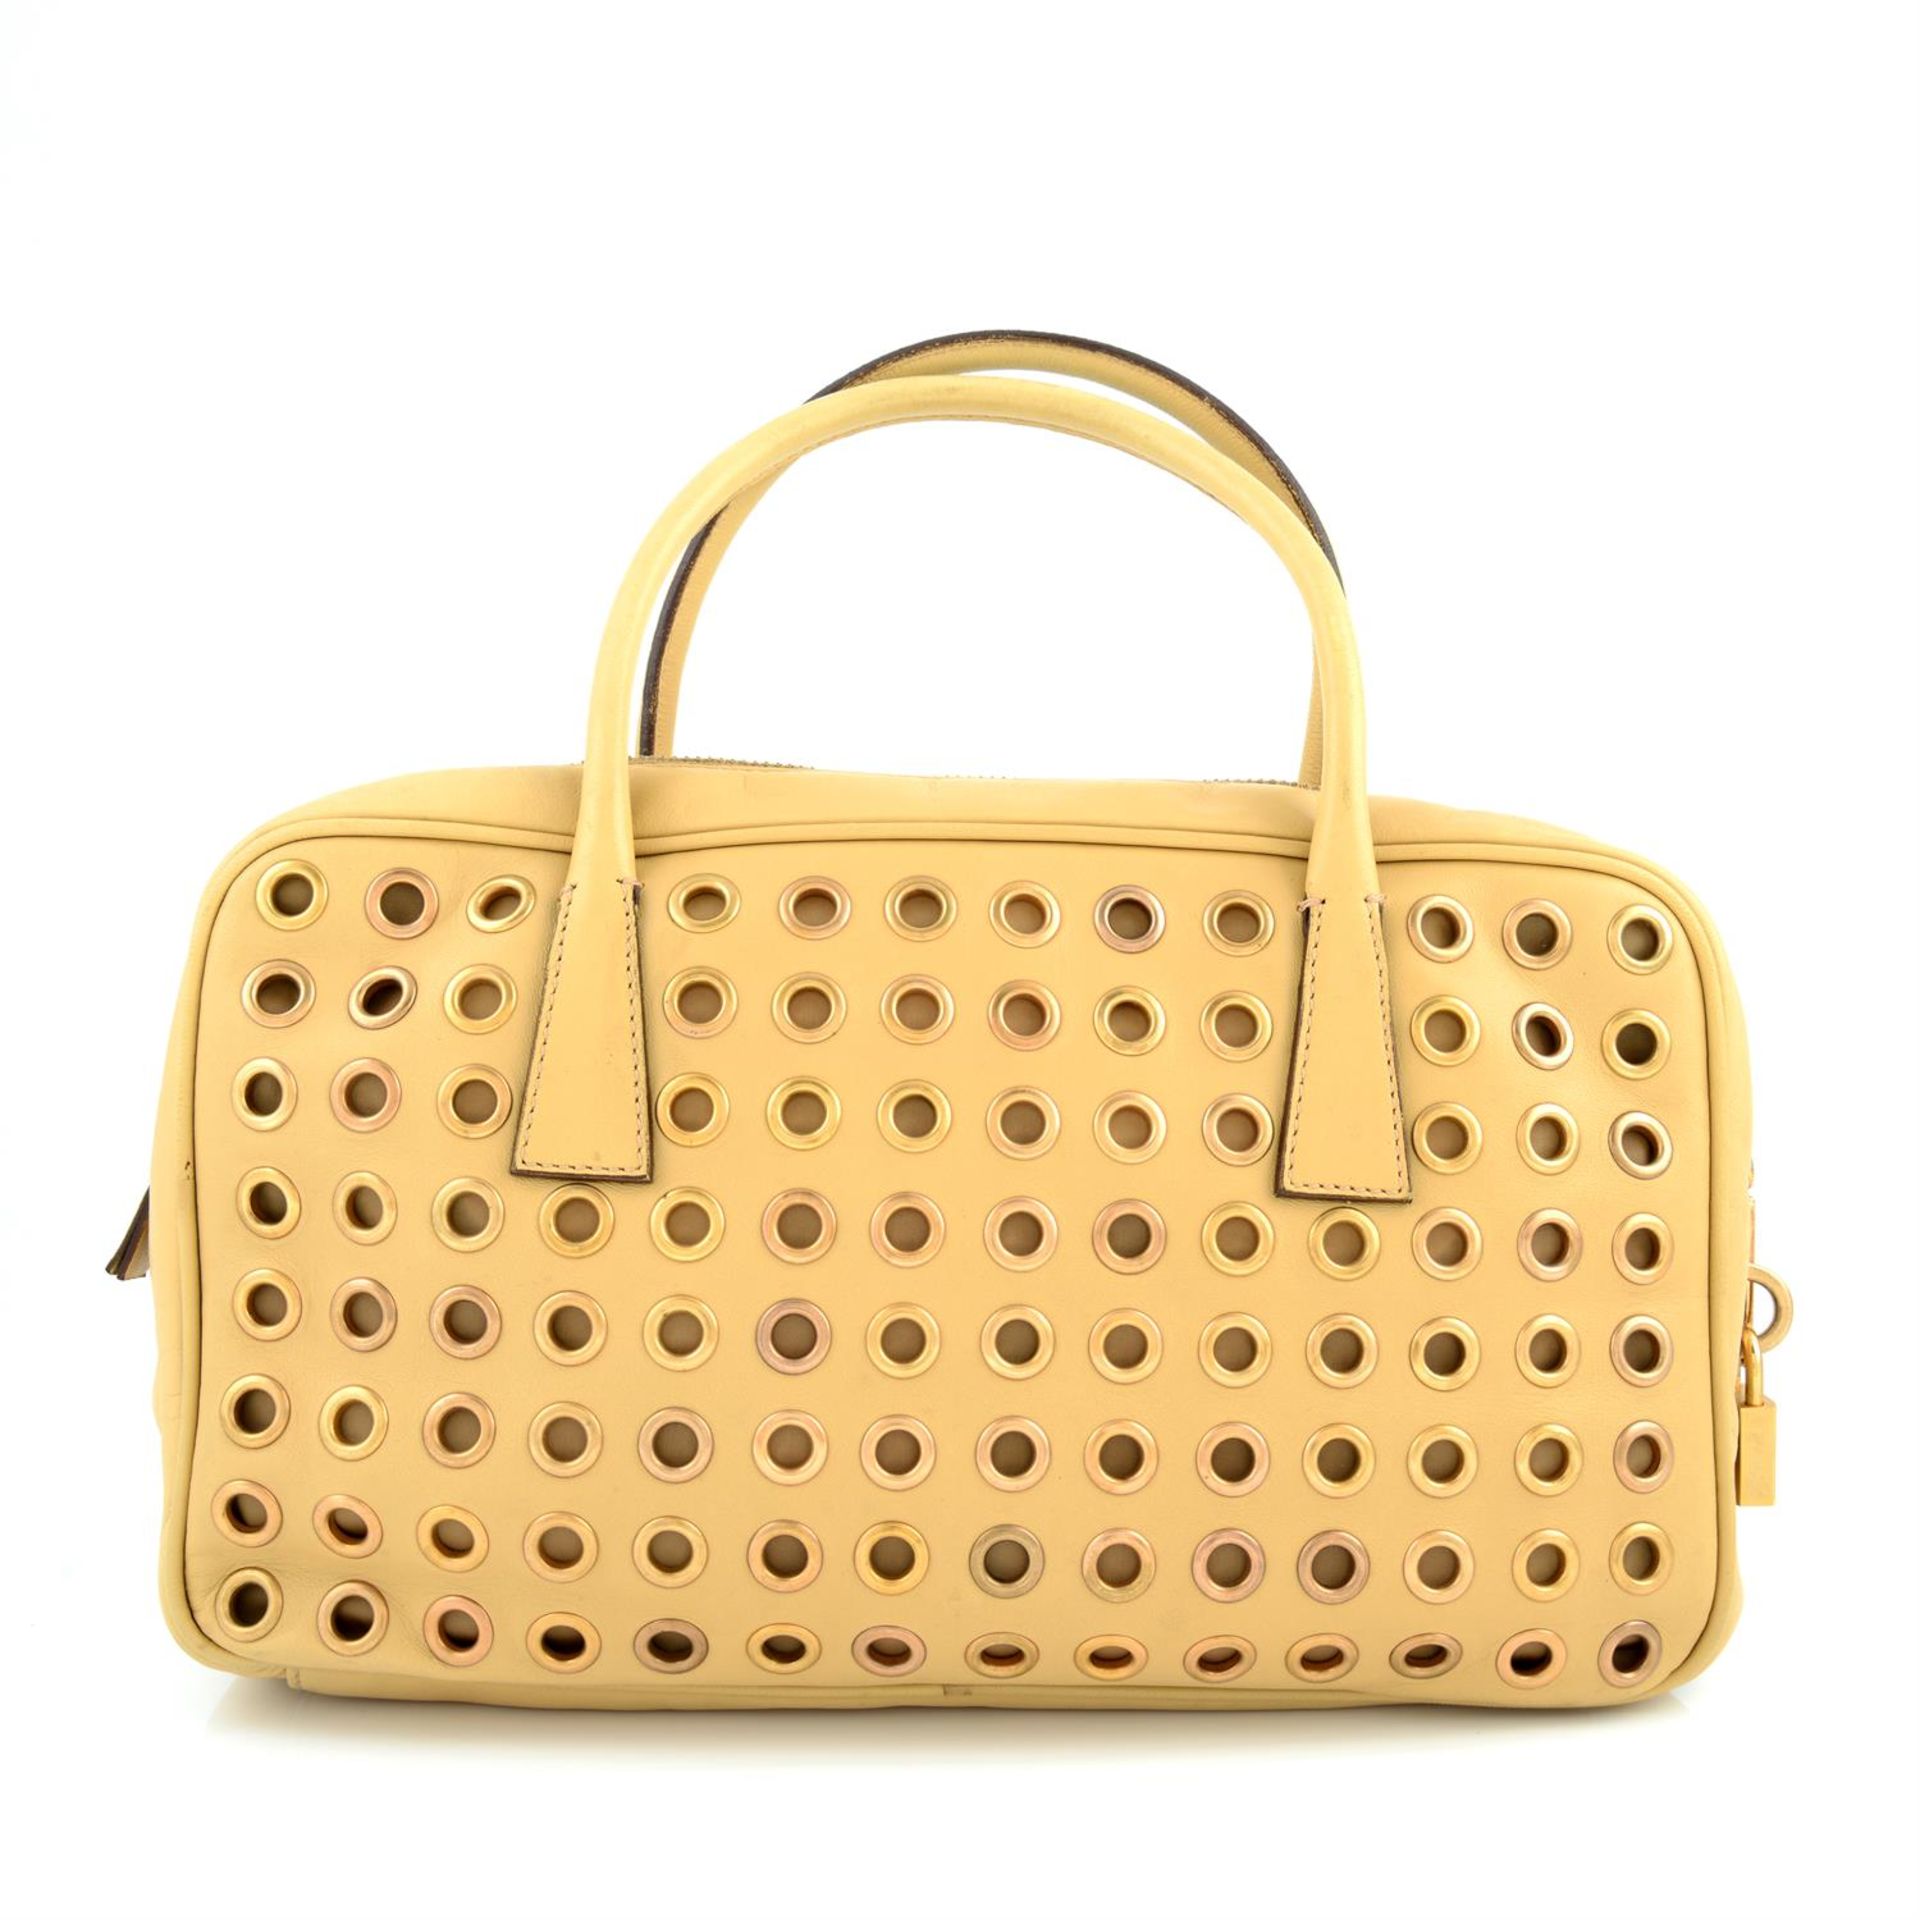 Prada - perforated handbag. - Image 2 of 2